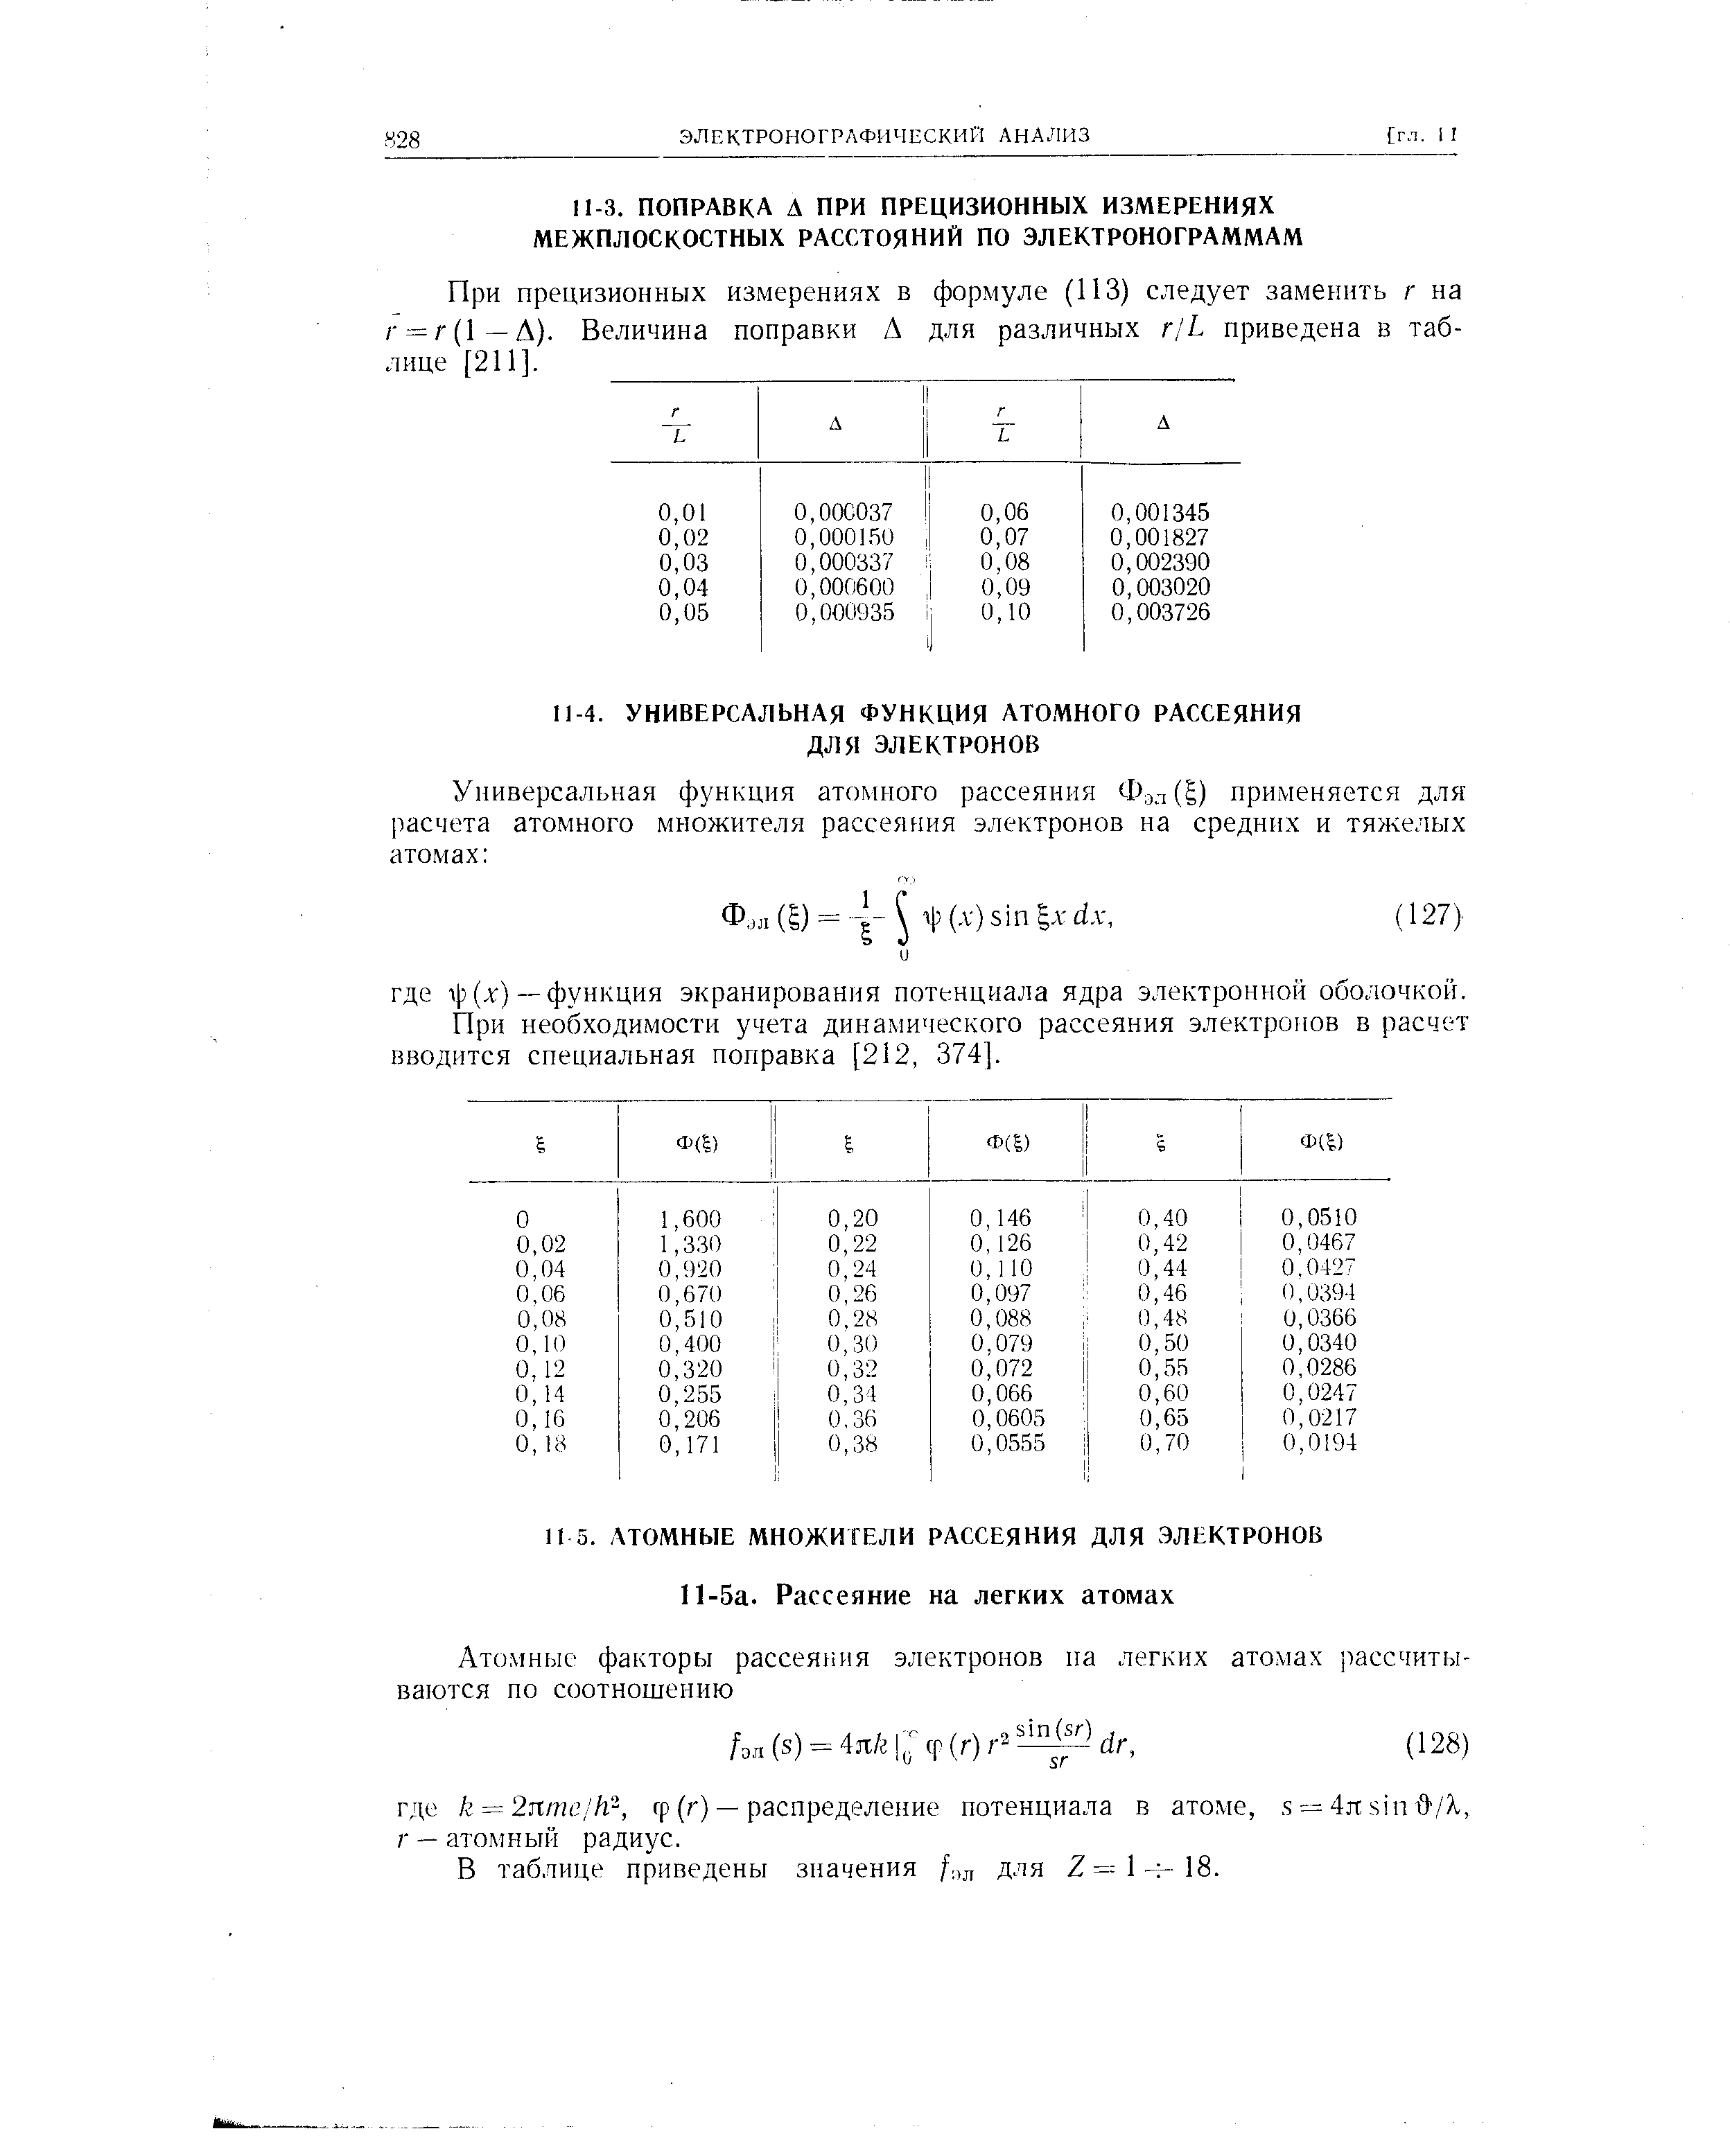 При прецизионных измерениях в формуле (ИЗ) следует заменить г на / = / (1—Д). Величина поправки Д для различных г/Ь приведена в таблице [211].
